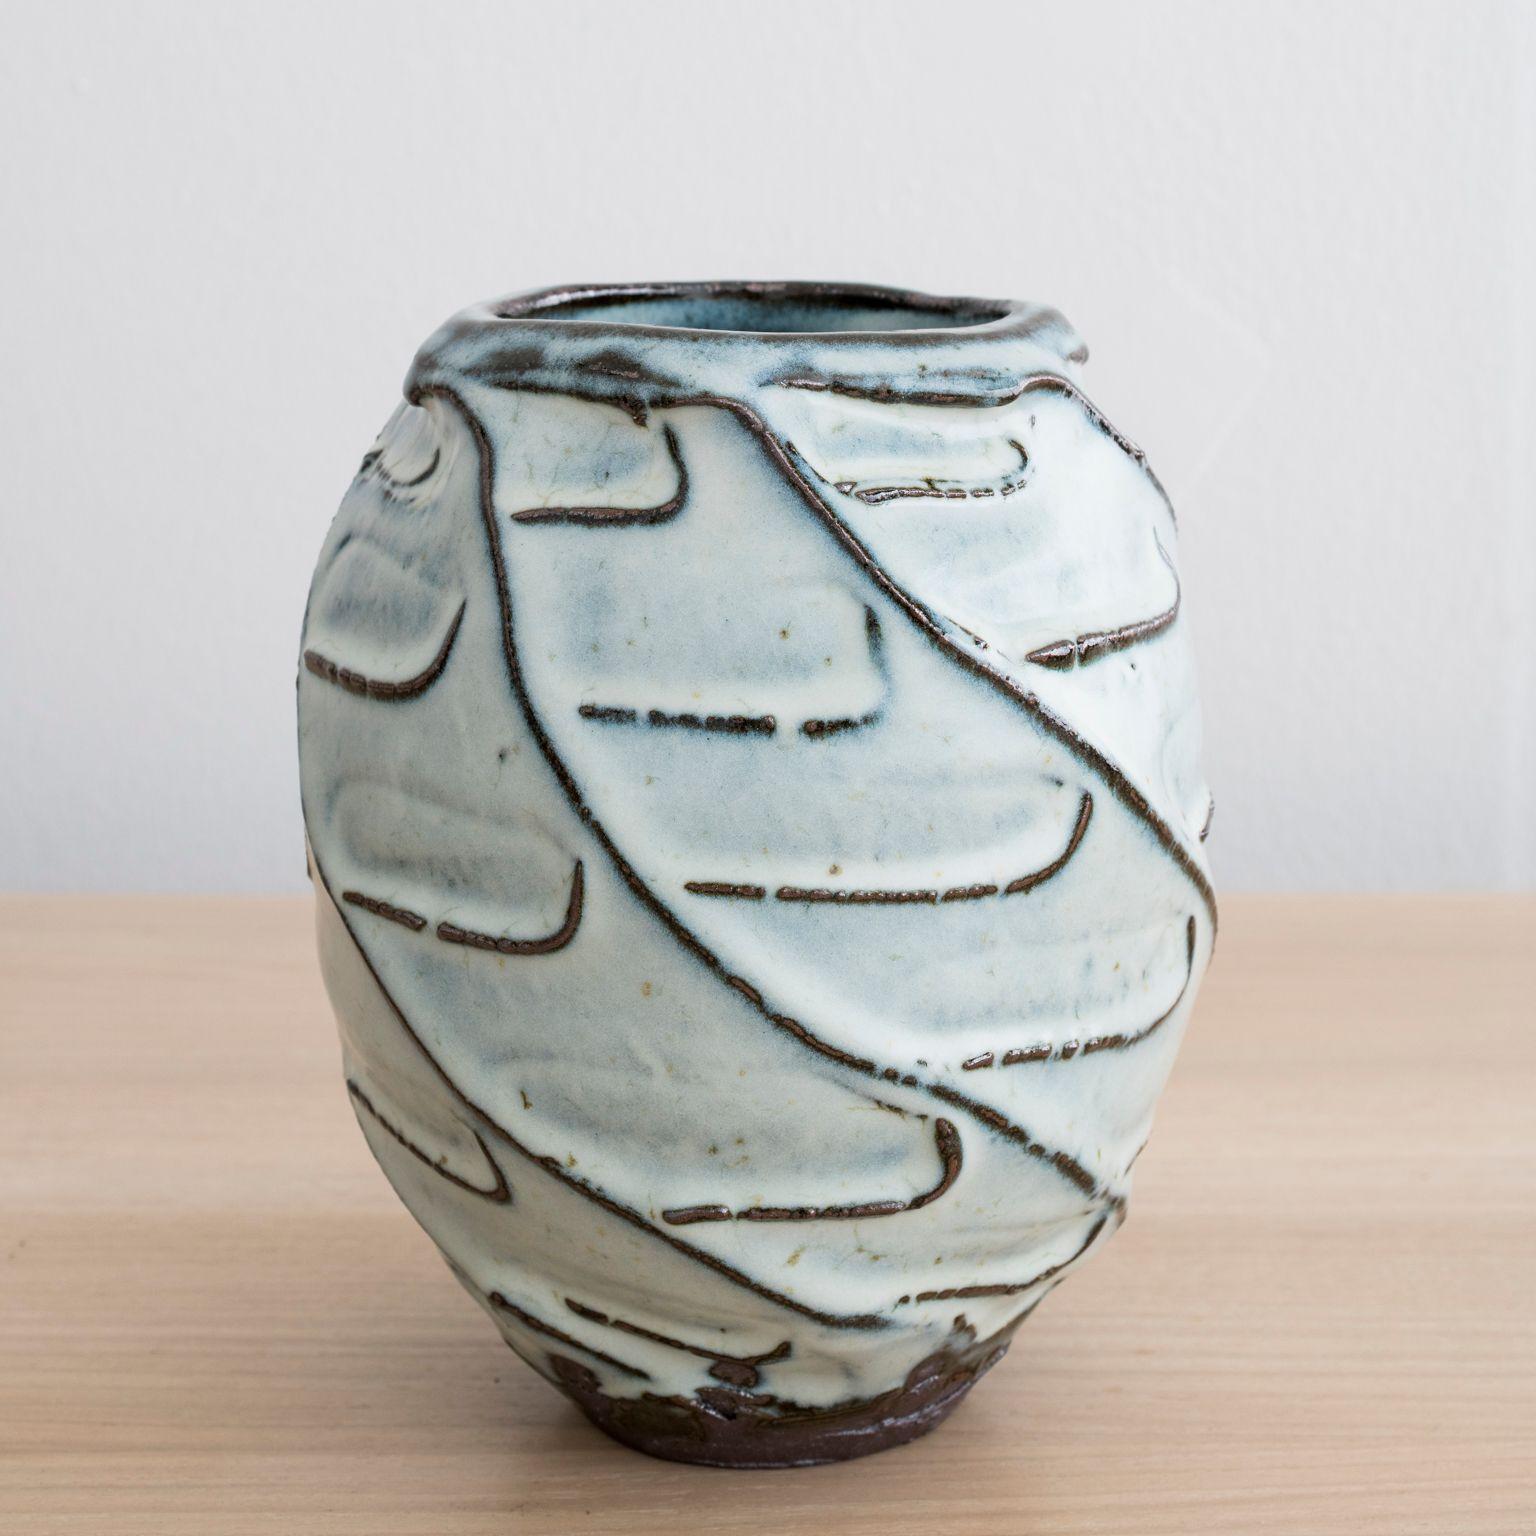 Vase aus Steingut, handgefertigt von Mats Svensson

Schwarzer Ton mit Nuka-Glasur

Hergestellt in Schweden, 2020

Ungefähr: Höhe 8 1/2